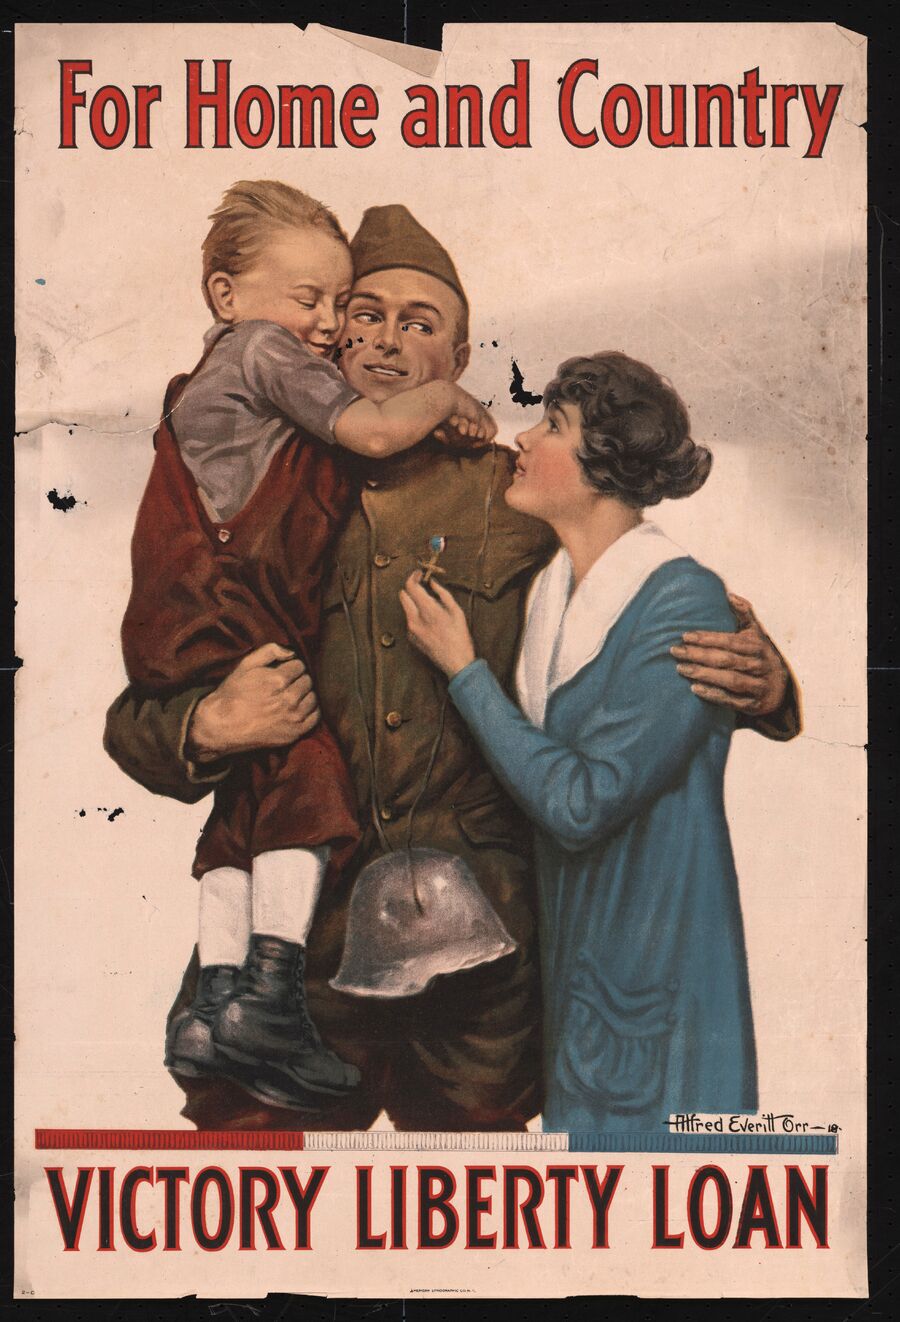 Американский агитационный плакат времен Первой мировой войны